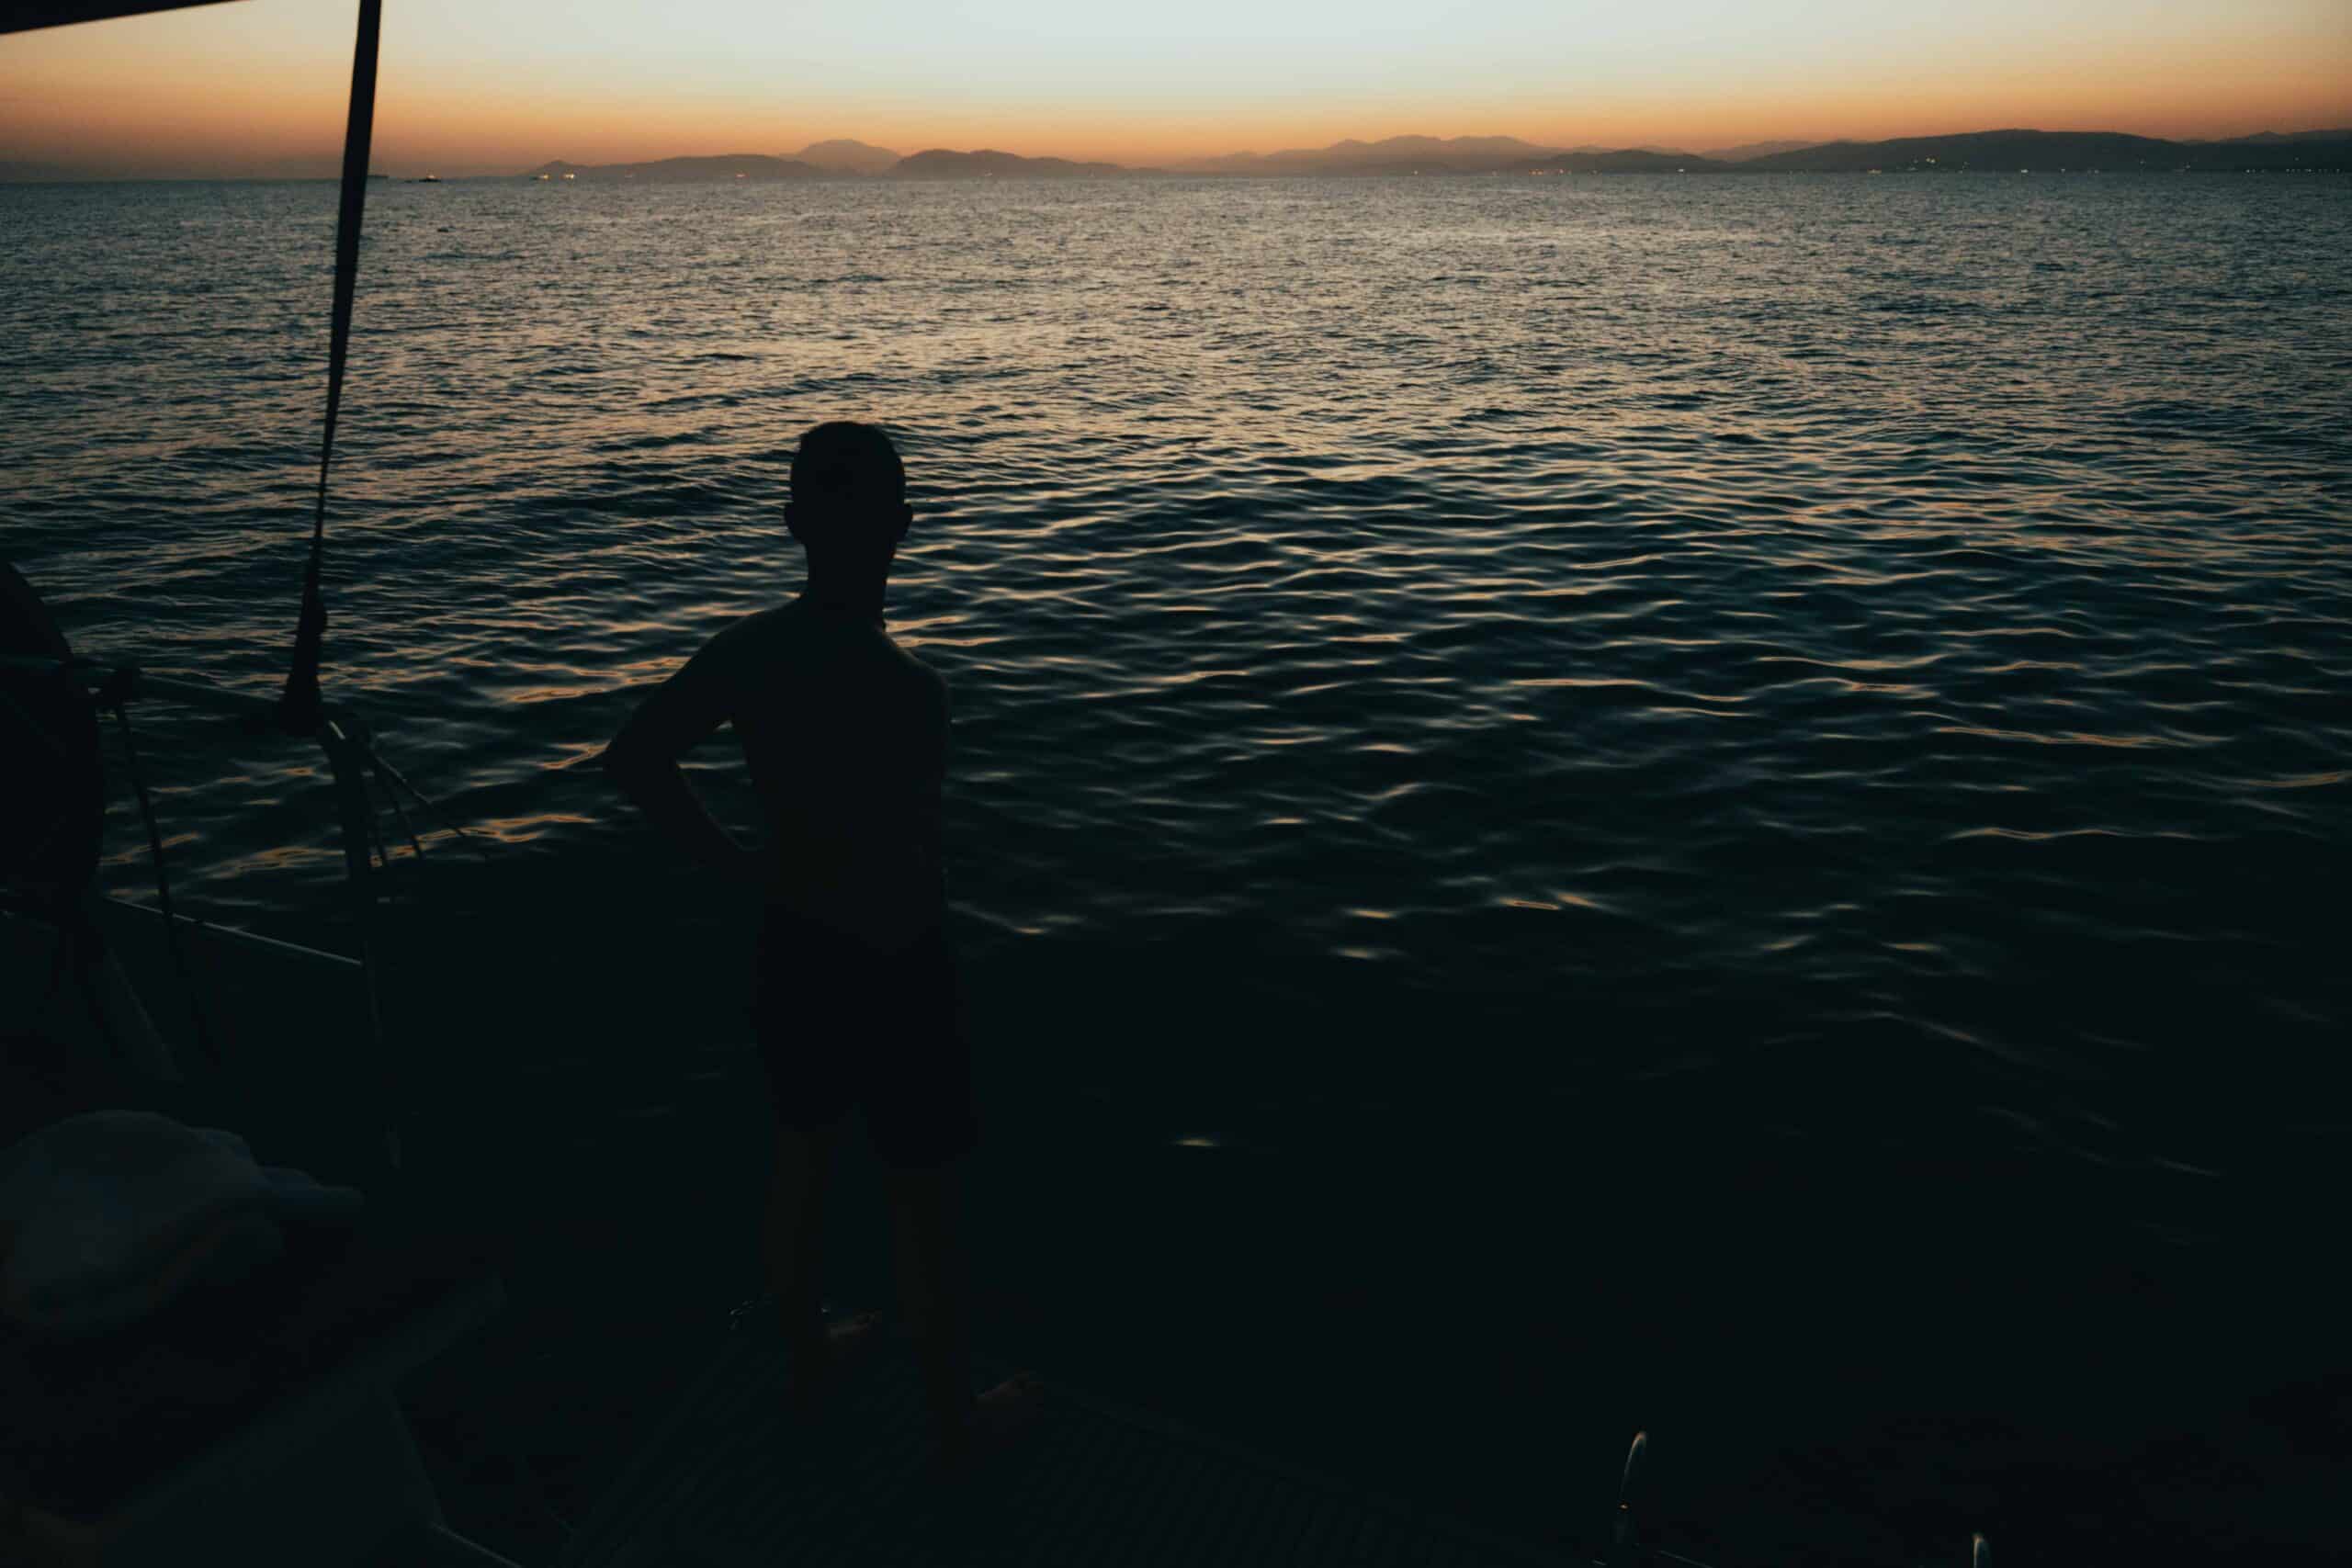 Die Silhouette einer Person steht am Rand eines Bootes und blickt bei Sonnenuntergang auf ein ruhiges Gewässer. Der Himmel zeigt einen Farbverlauf von Orange zu Dunkelblau, während die Sonne hinter den fernen Bergen untergeht. Diese Segeln-Szene ruft ein Gefühl der Ruhe und Besinnung hervor.